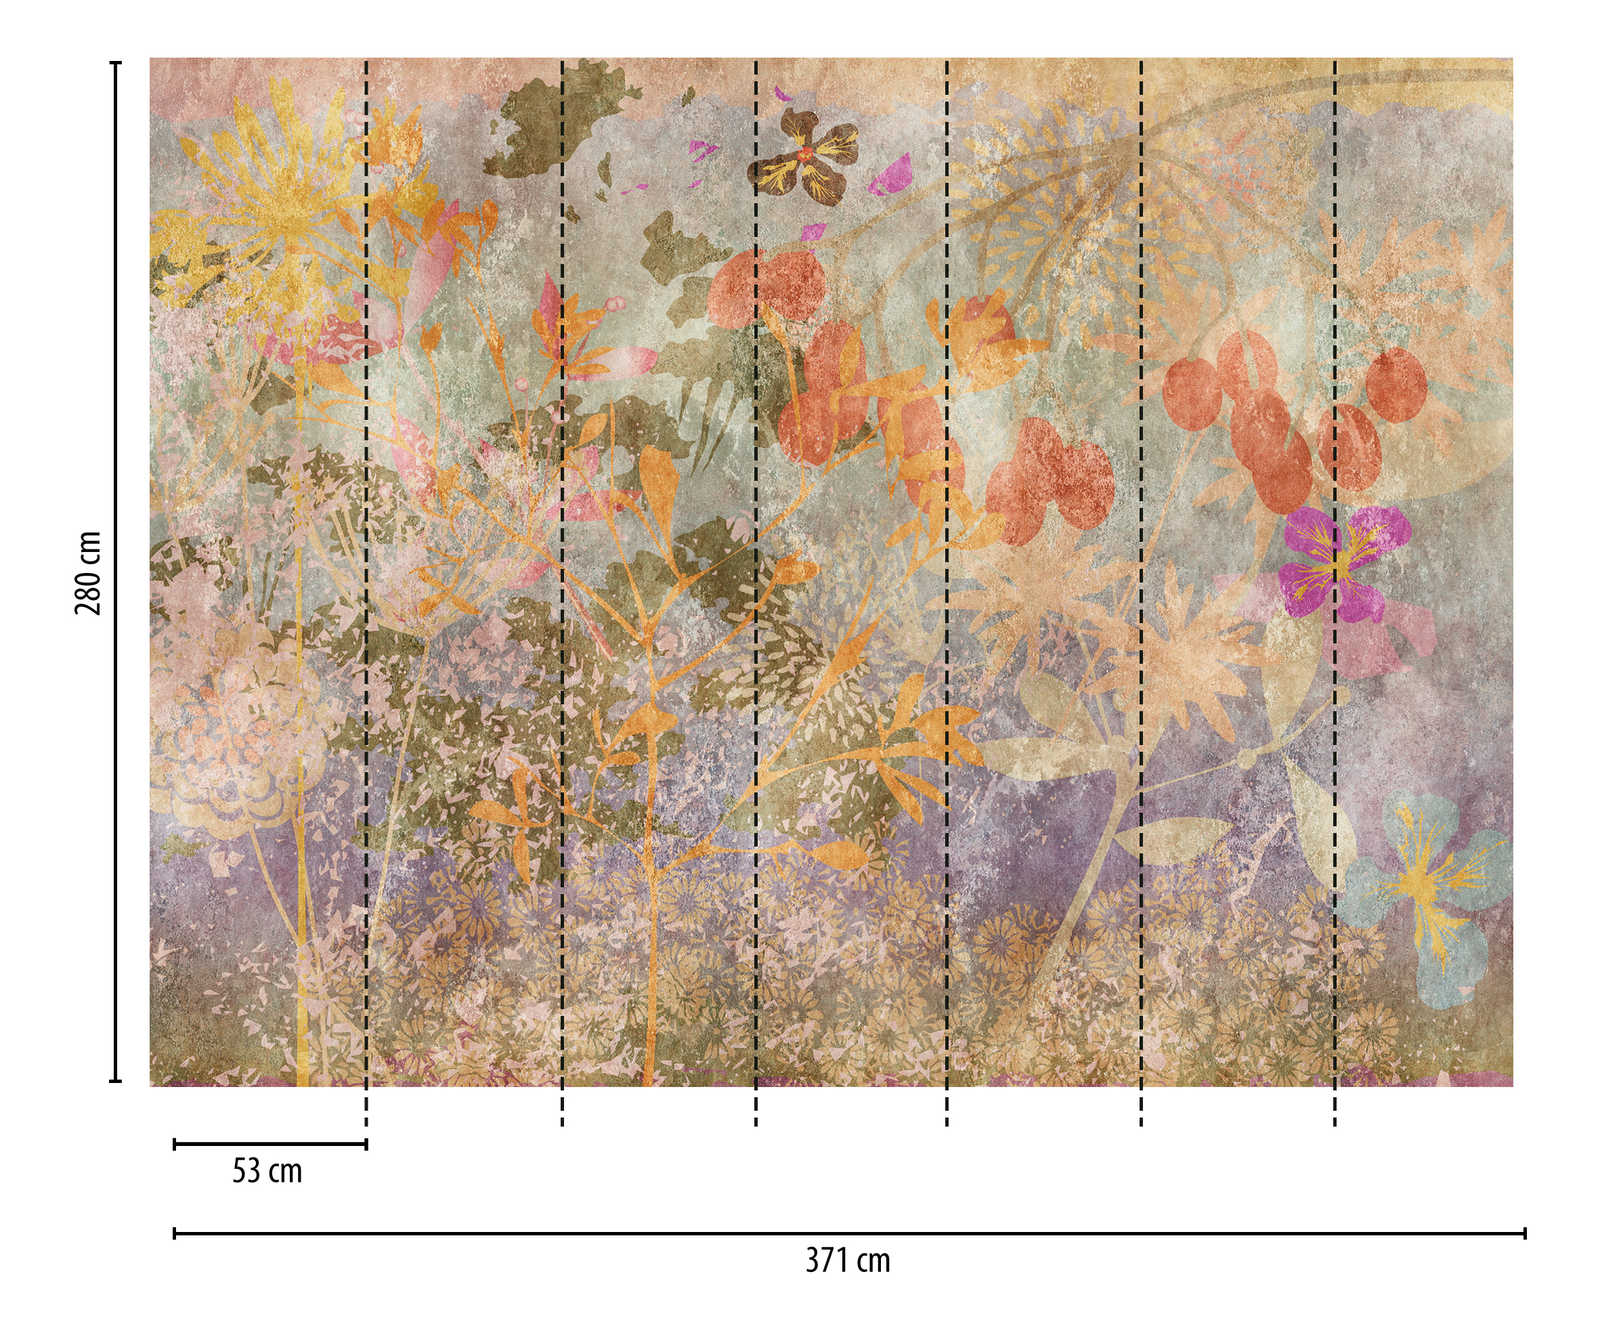             Behang nieuwigheid - motief behang bloemen fresco in retro stijl
        